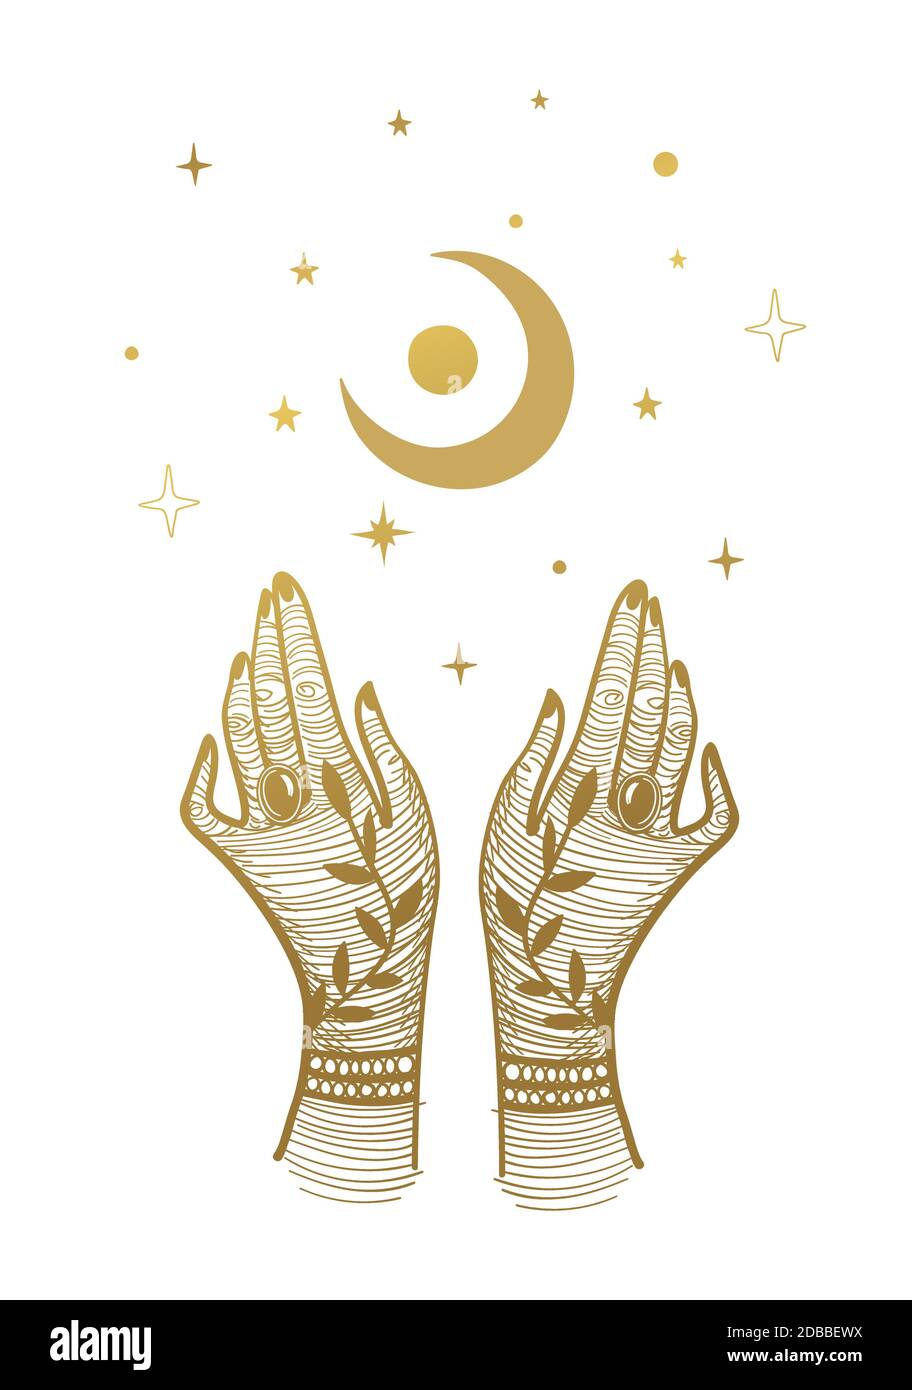 Les mains des femmes avec des tatouages et un croissant de lune. Illustration magique, conception de boho, tatouage, gravure, cartes de tarot. Dessin mystique d'or isolé sur fond blanc avec des étoiles Illustration de Vecteur